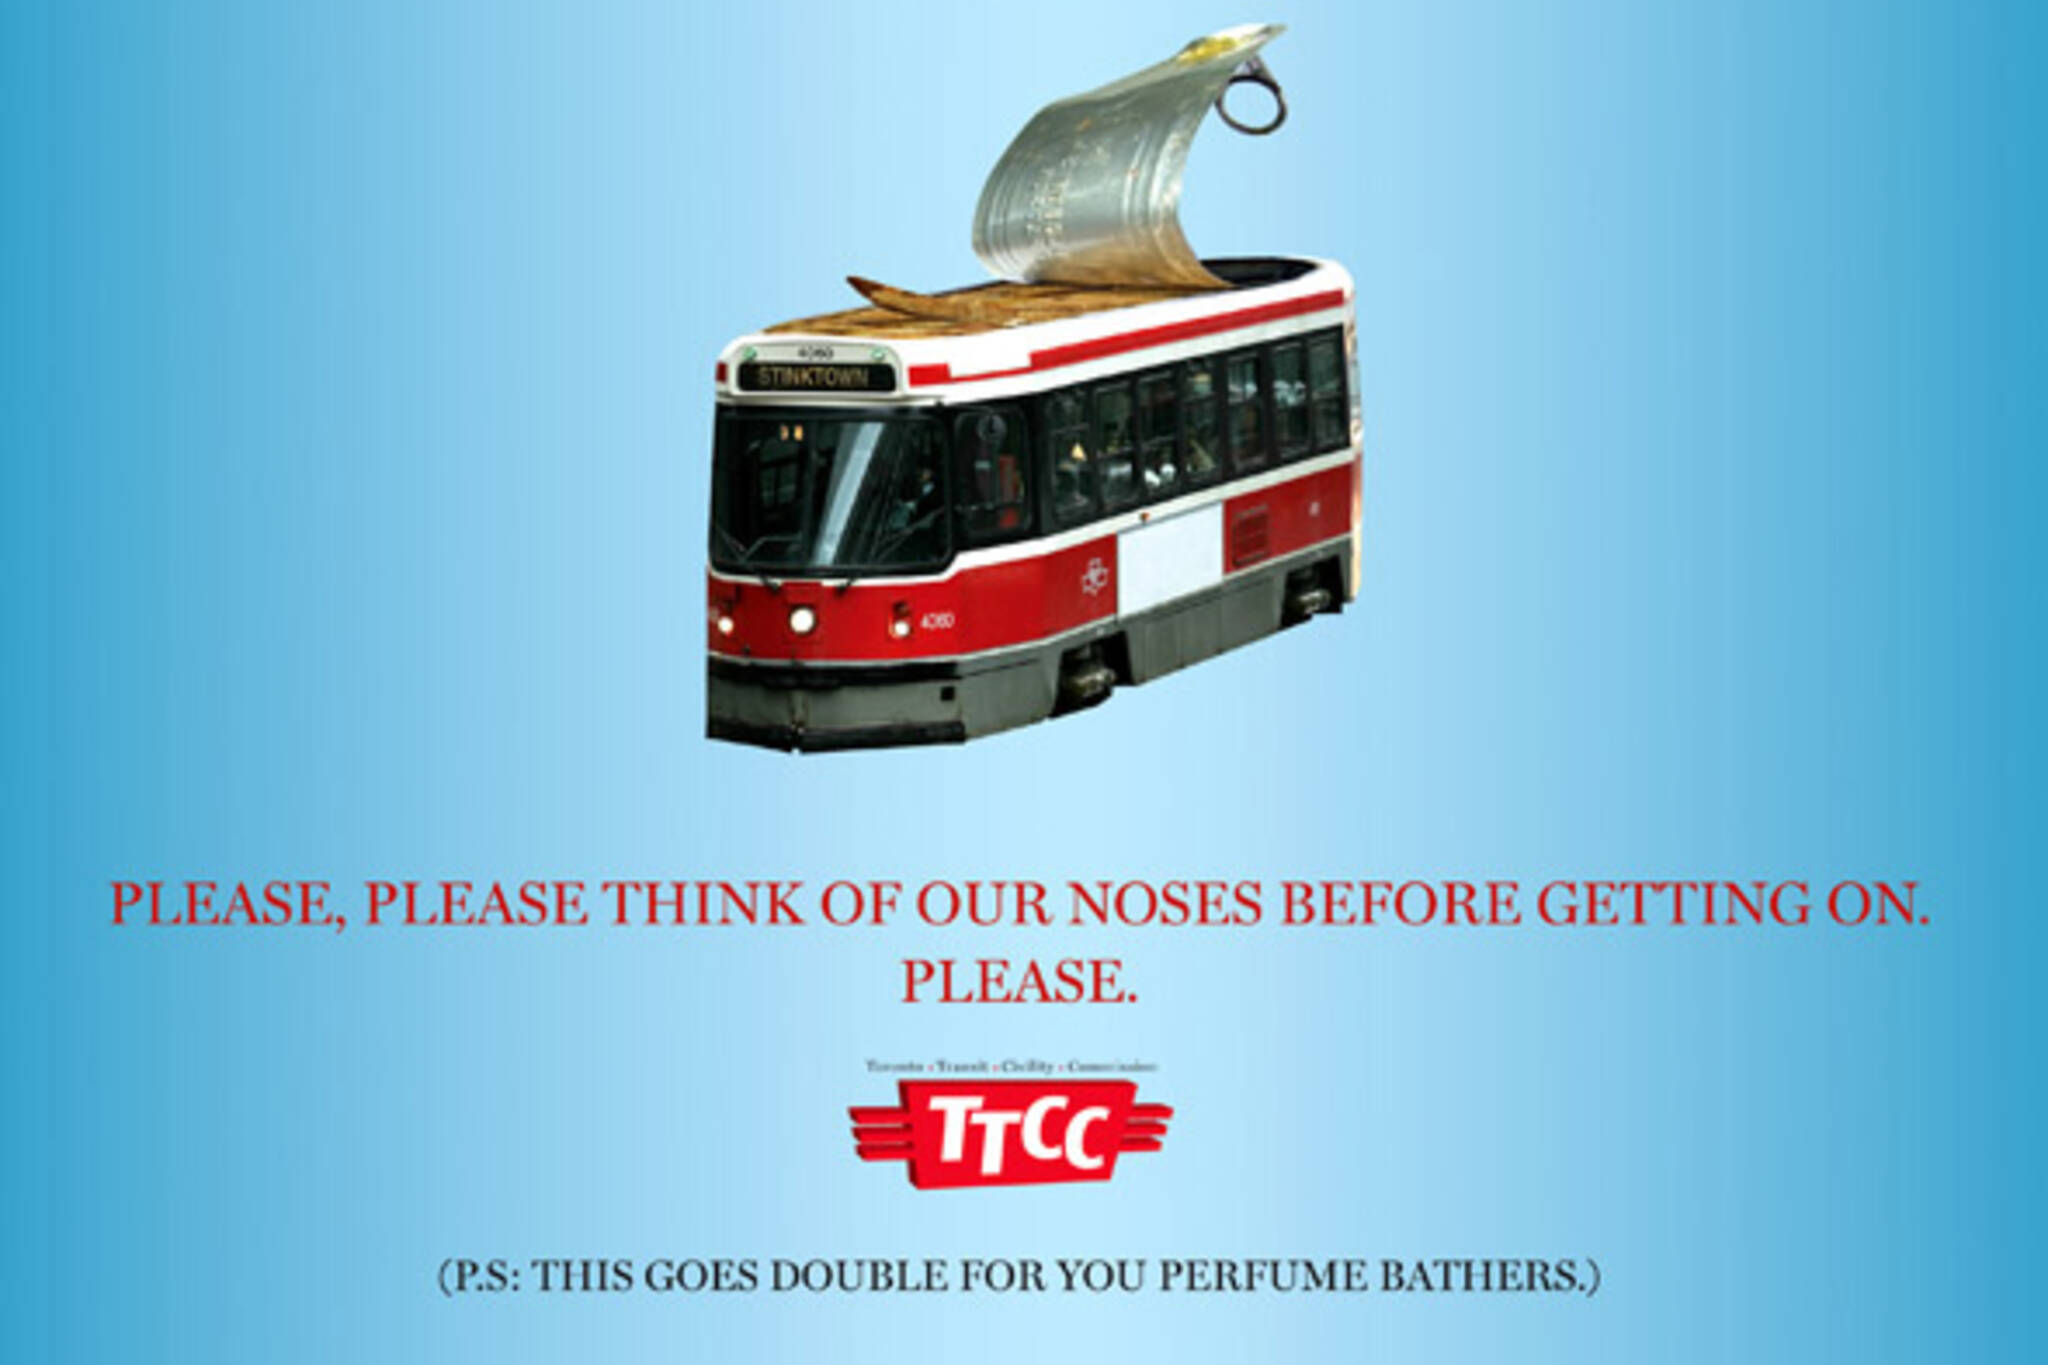 TTC etiquette posters